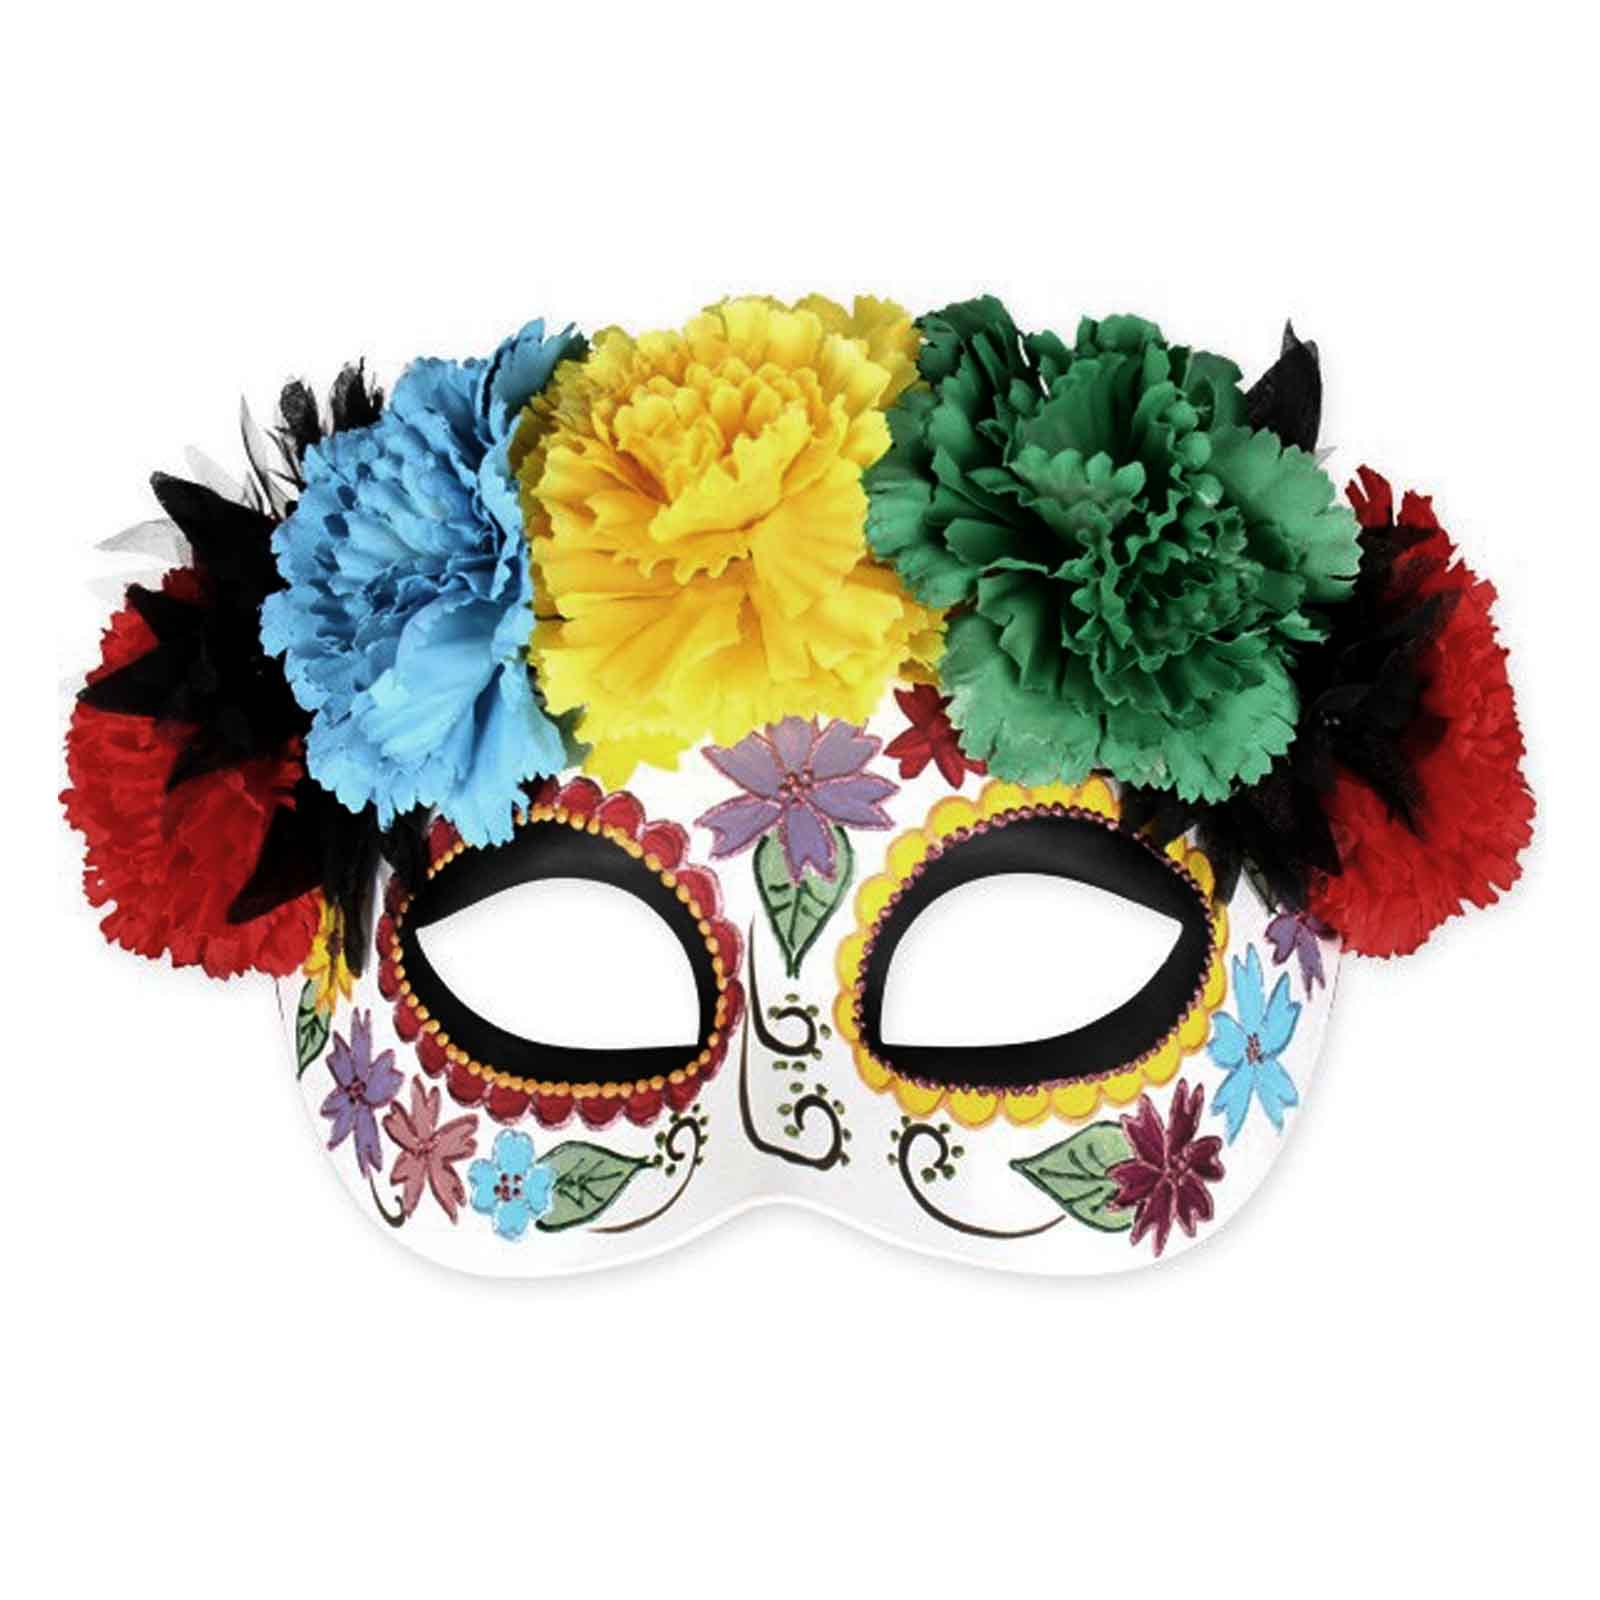 Весенняя маска ободок. Цветочная карнавальная маска. Маска ободок. Маска карнавальная с цветами. Маска с цветами карнавал.